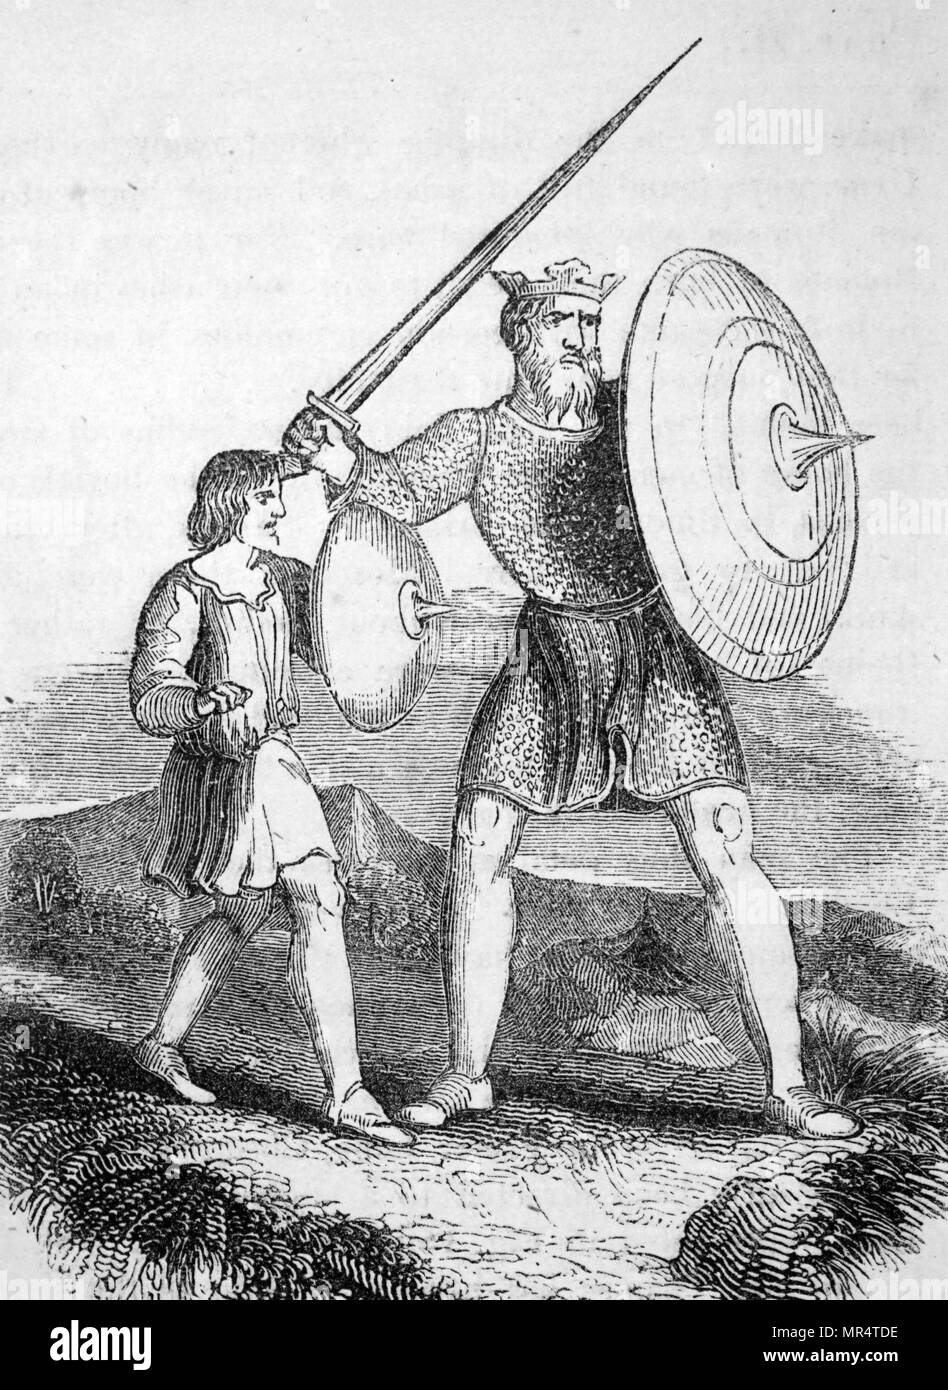 Abbildung: Darstellung einer angelsächsischen König Bewaffnet mit Schwert und Schild und gekleidet in Kettenhemden. An seiner Seite ist sein Waffenträger. Vom 18. Jahrhundert Stockfoto